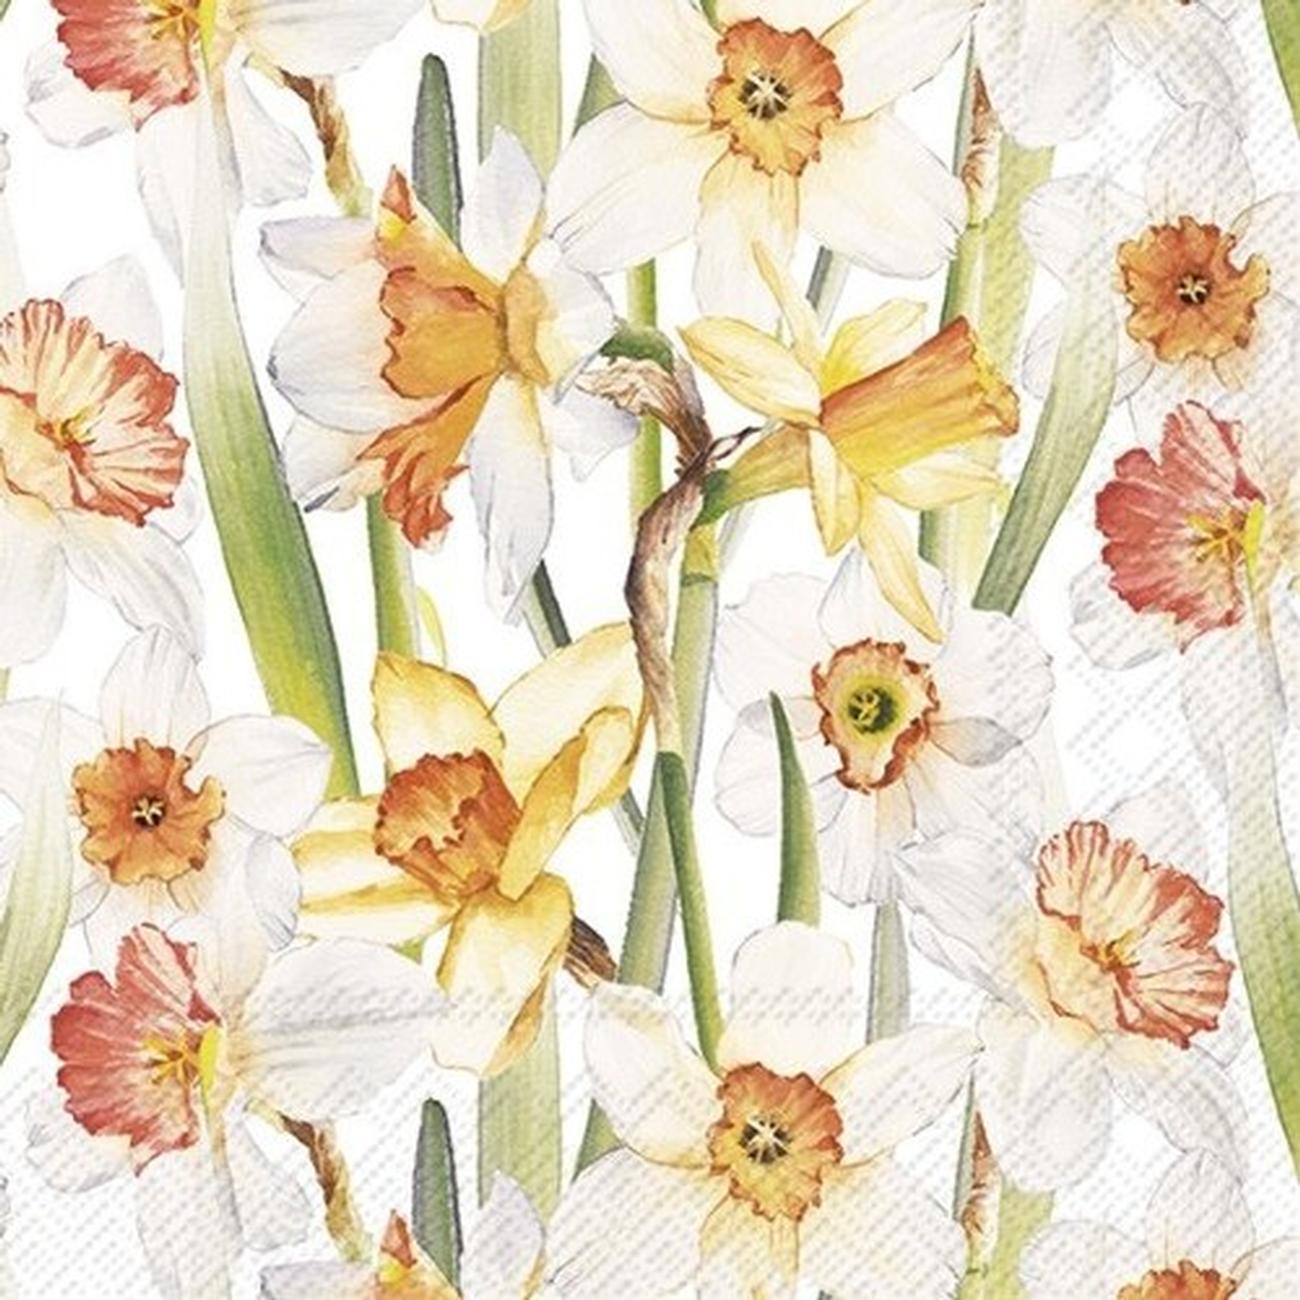 ihr-daffodil-joy-lunch-napkins - IHR Lunch Napkins Daffodil Joy 